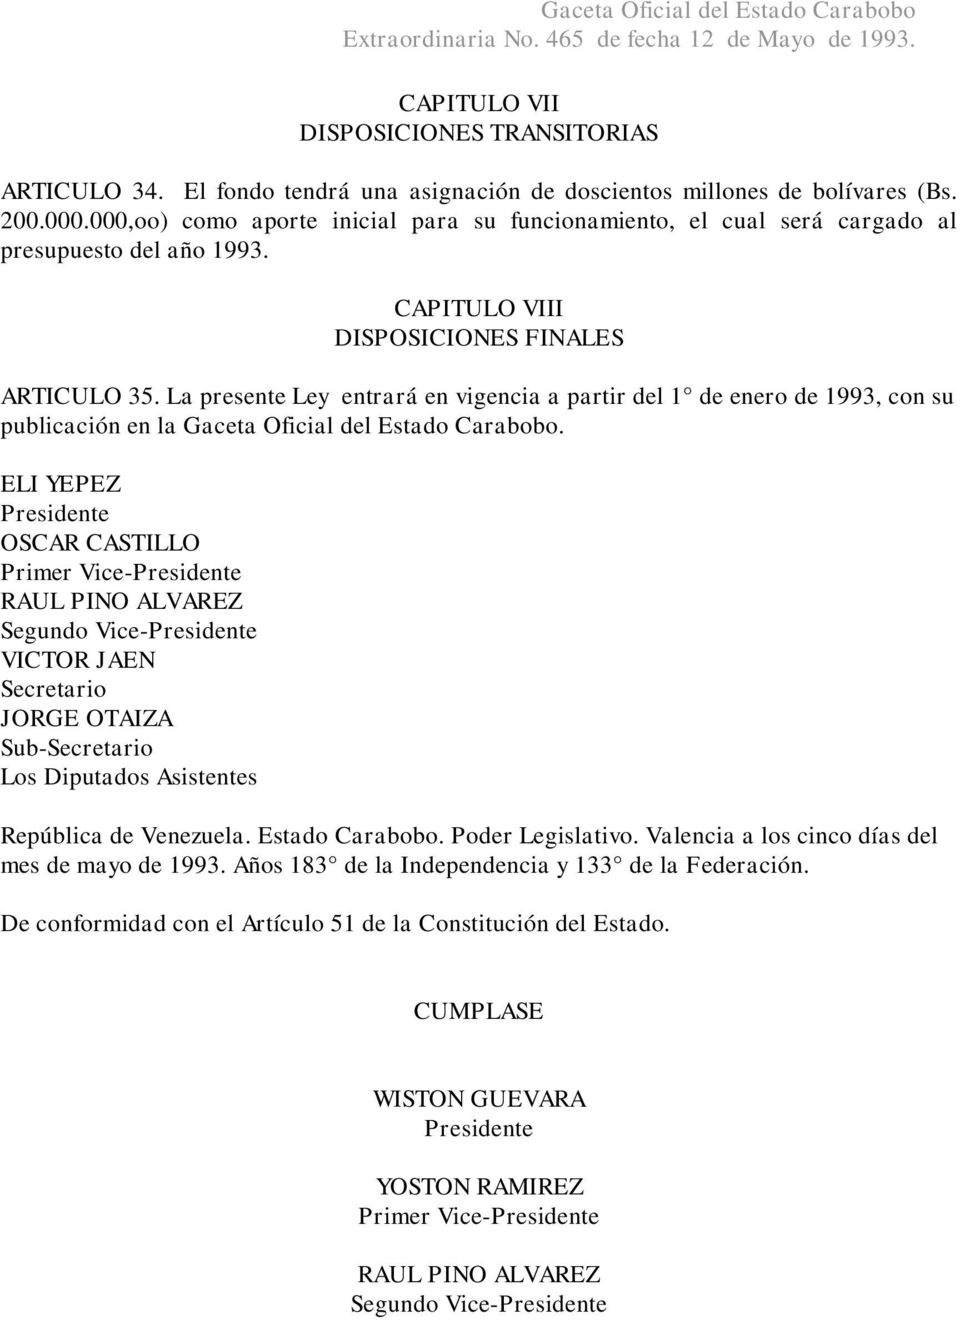 La presente Ley entrará en vigencia a partir del 1 de enero de 1993, con su publicación en la Gaceta Oficial del Estado Carabobo.